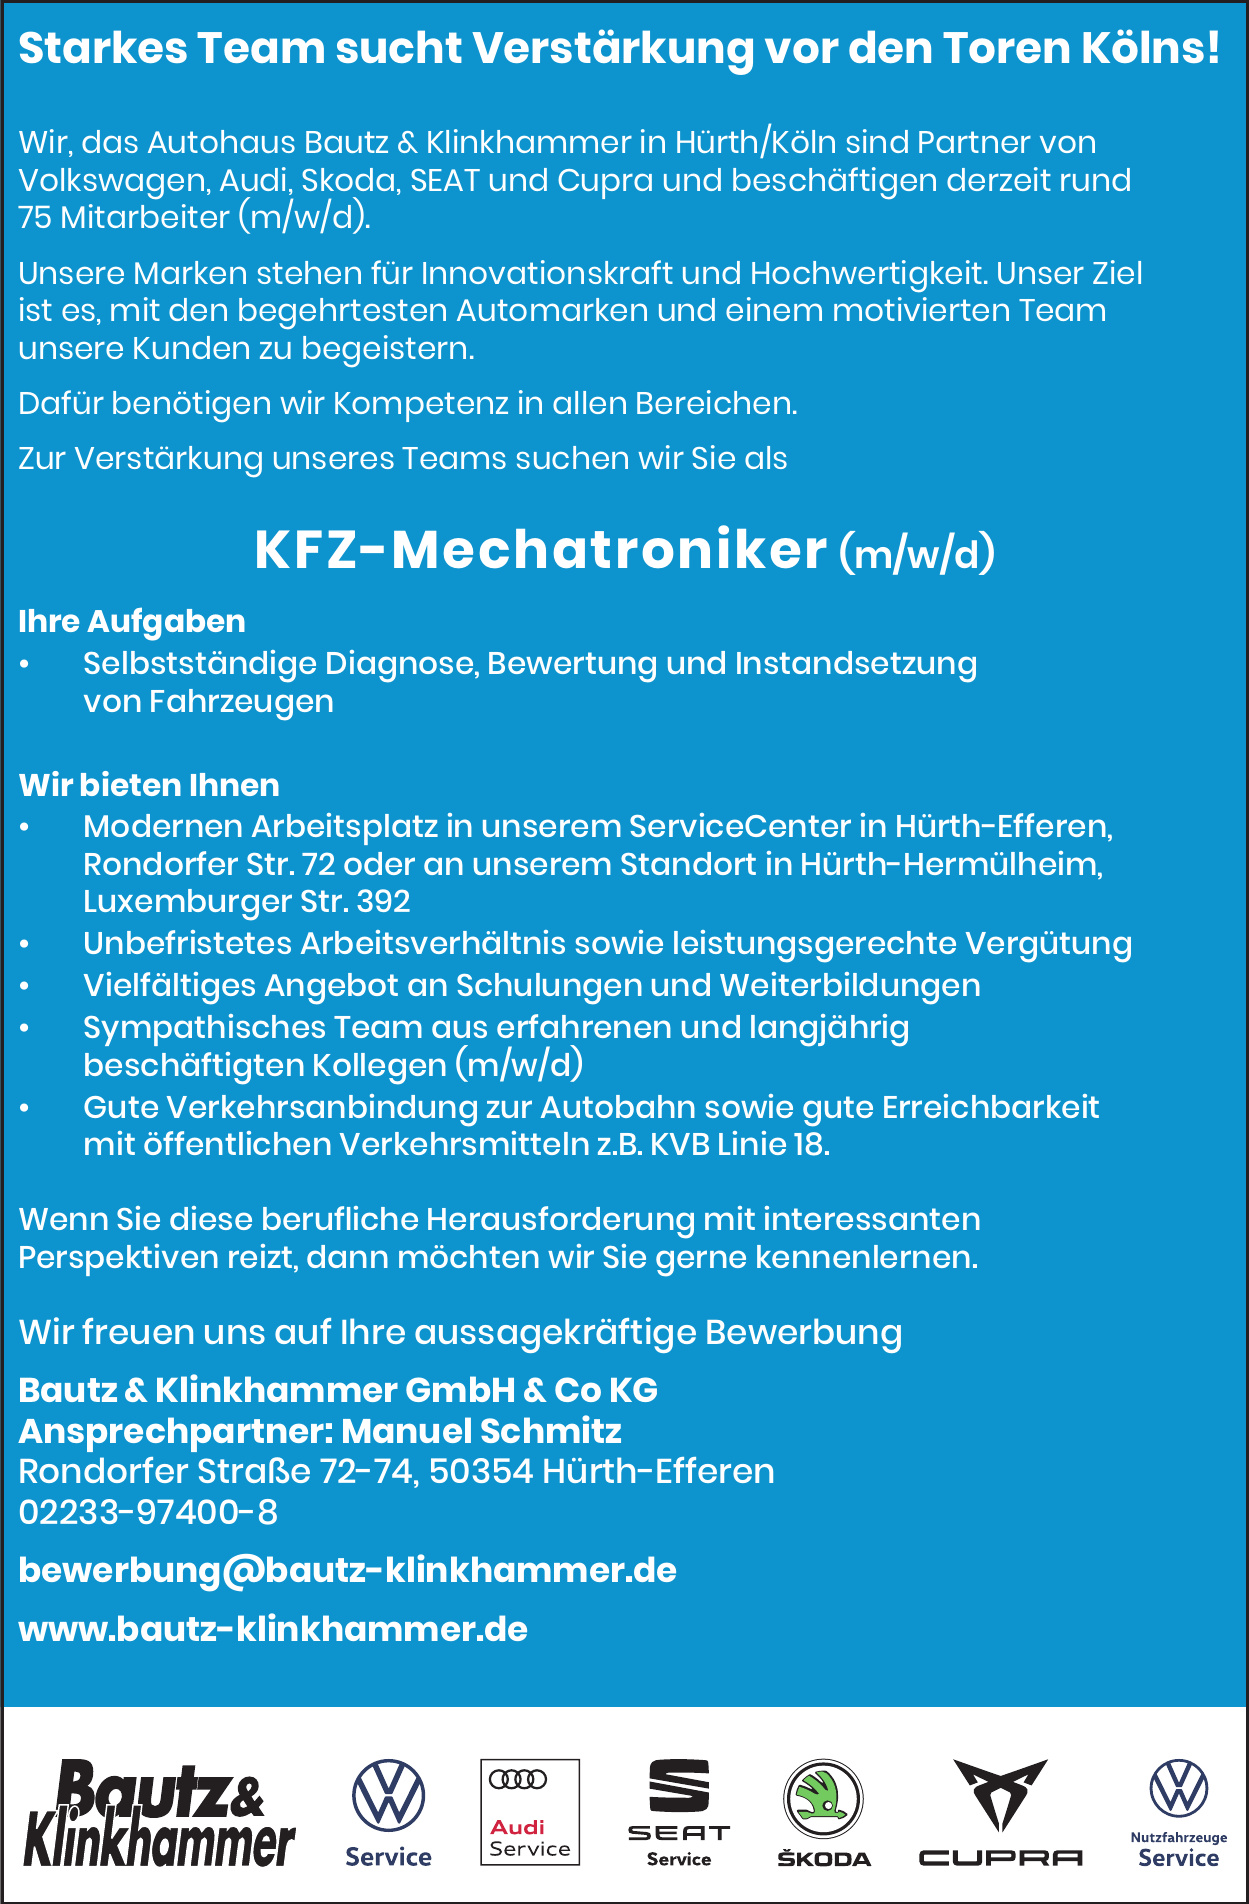 Bautz & Klinkhammer GmbH & Co. KG